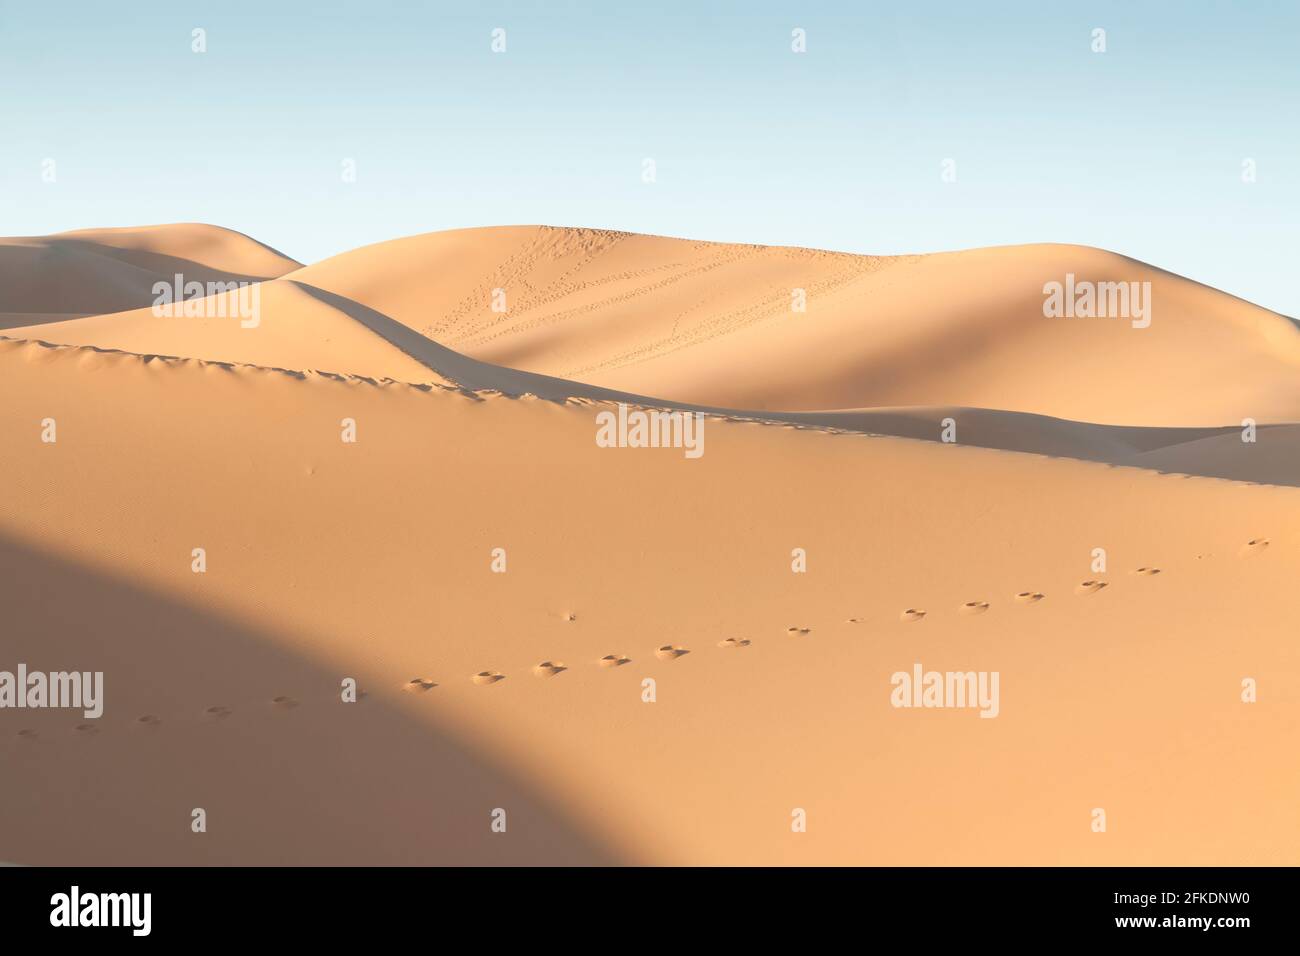 Erg Chebbi dunes at Sahara desert, Morocco, sunlit at sunrise Stock Photo